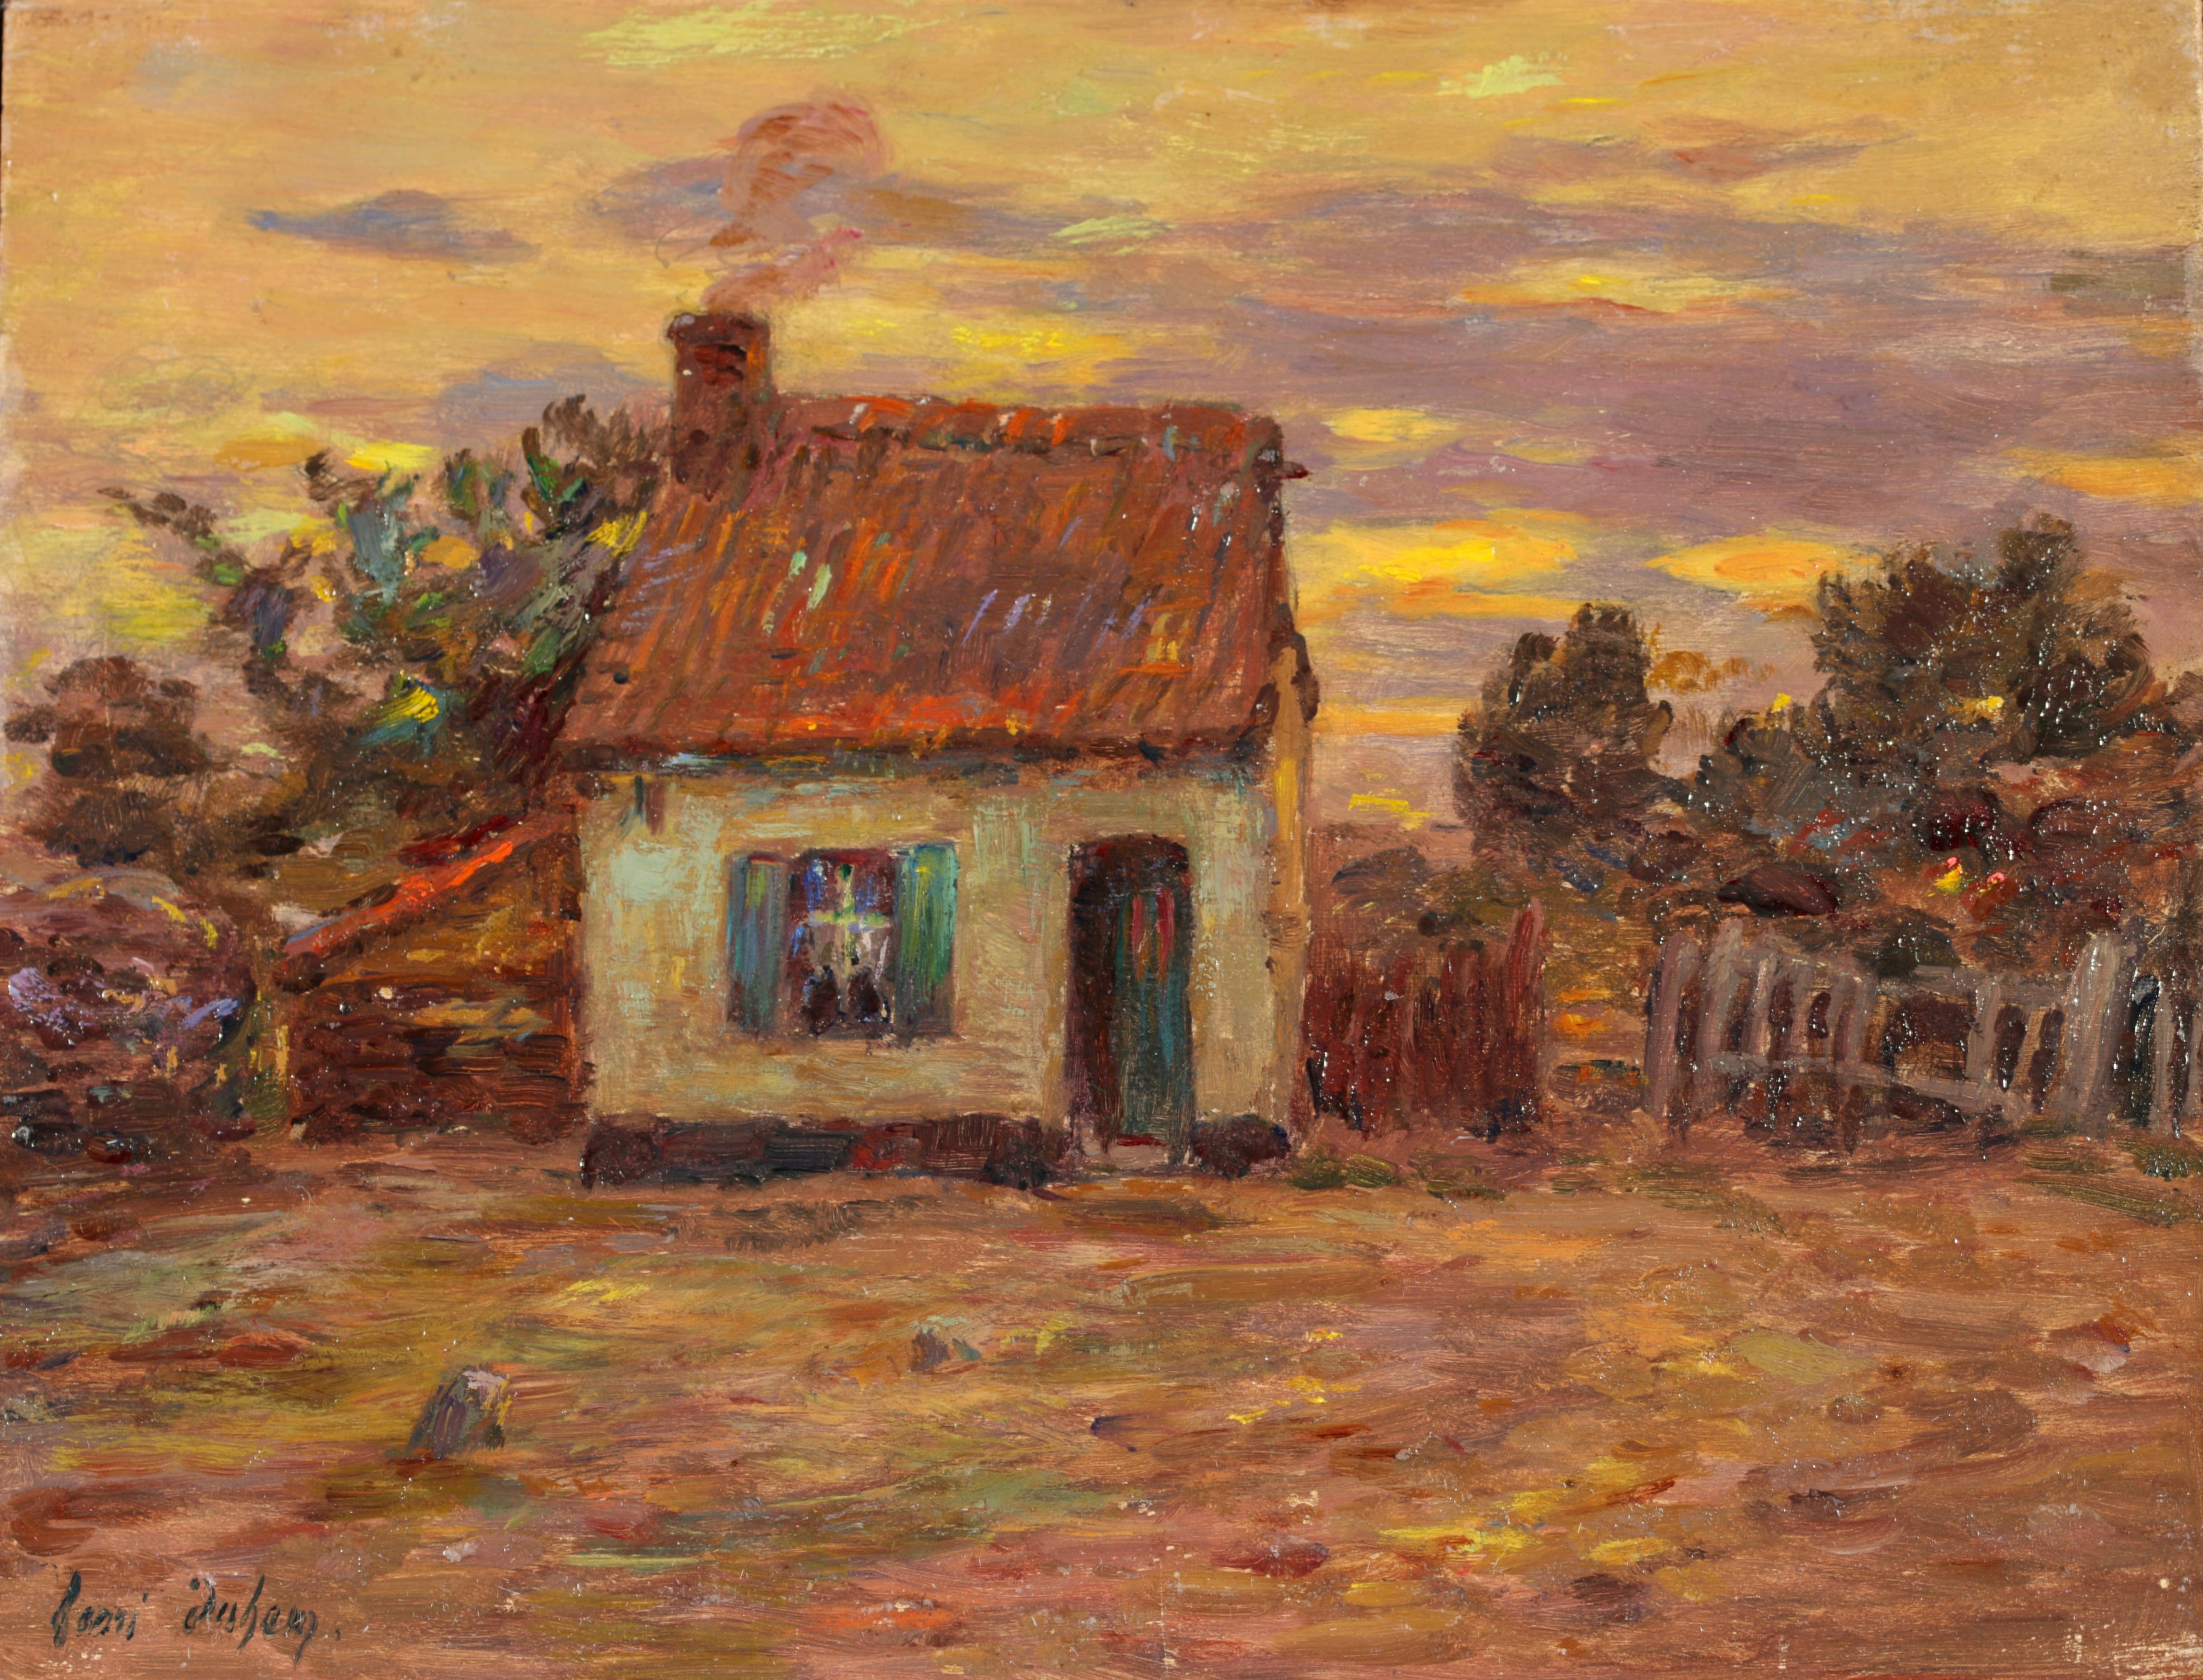 Cottage at Sundown - Impressionist Oil, Landscape at Sunset by Henri Duhem